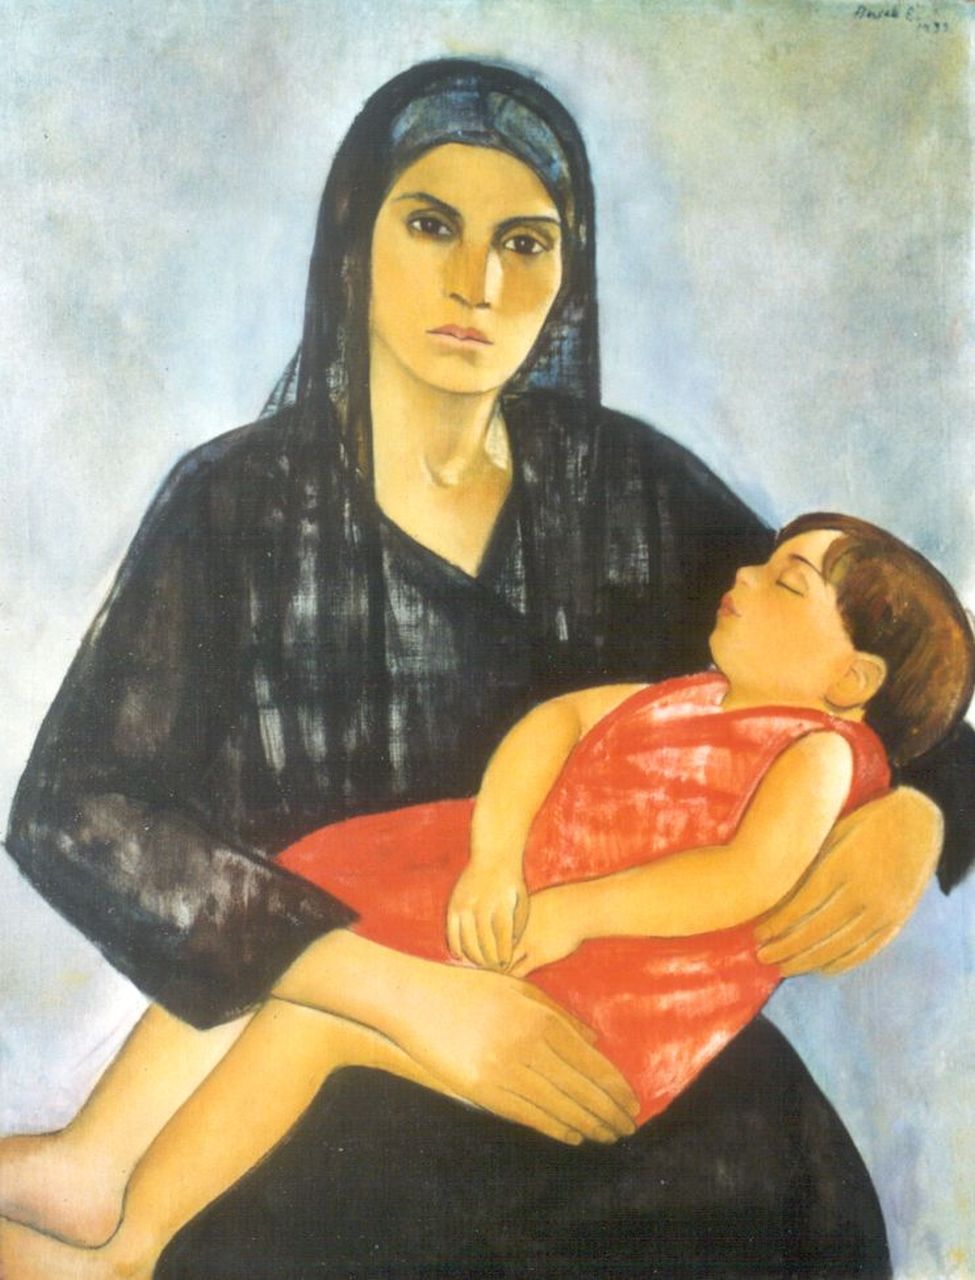 Basch E.  | Edith Basch, Moeder met slapend kind, olieverf op doek 95,7 x 74,0 cm, gesigneerd rechtsboven en gedateerd 1933